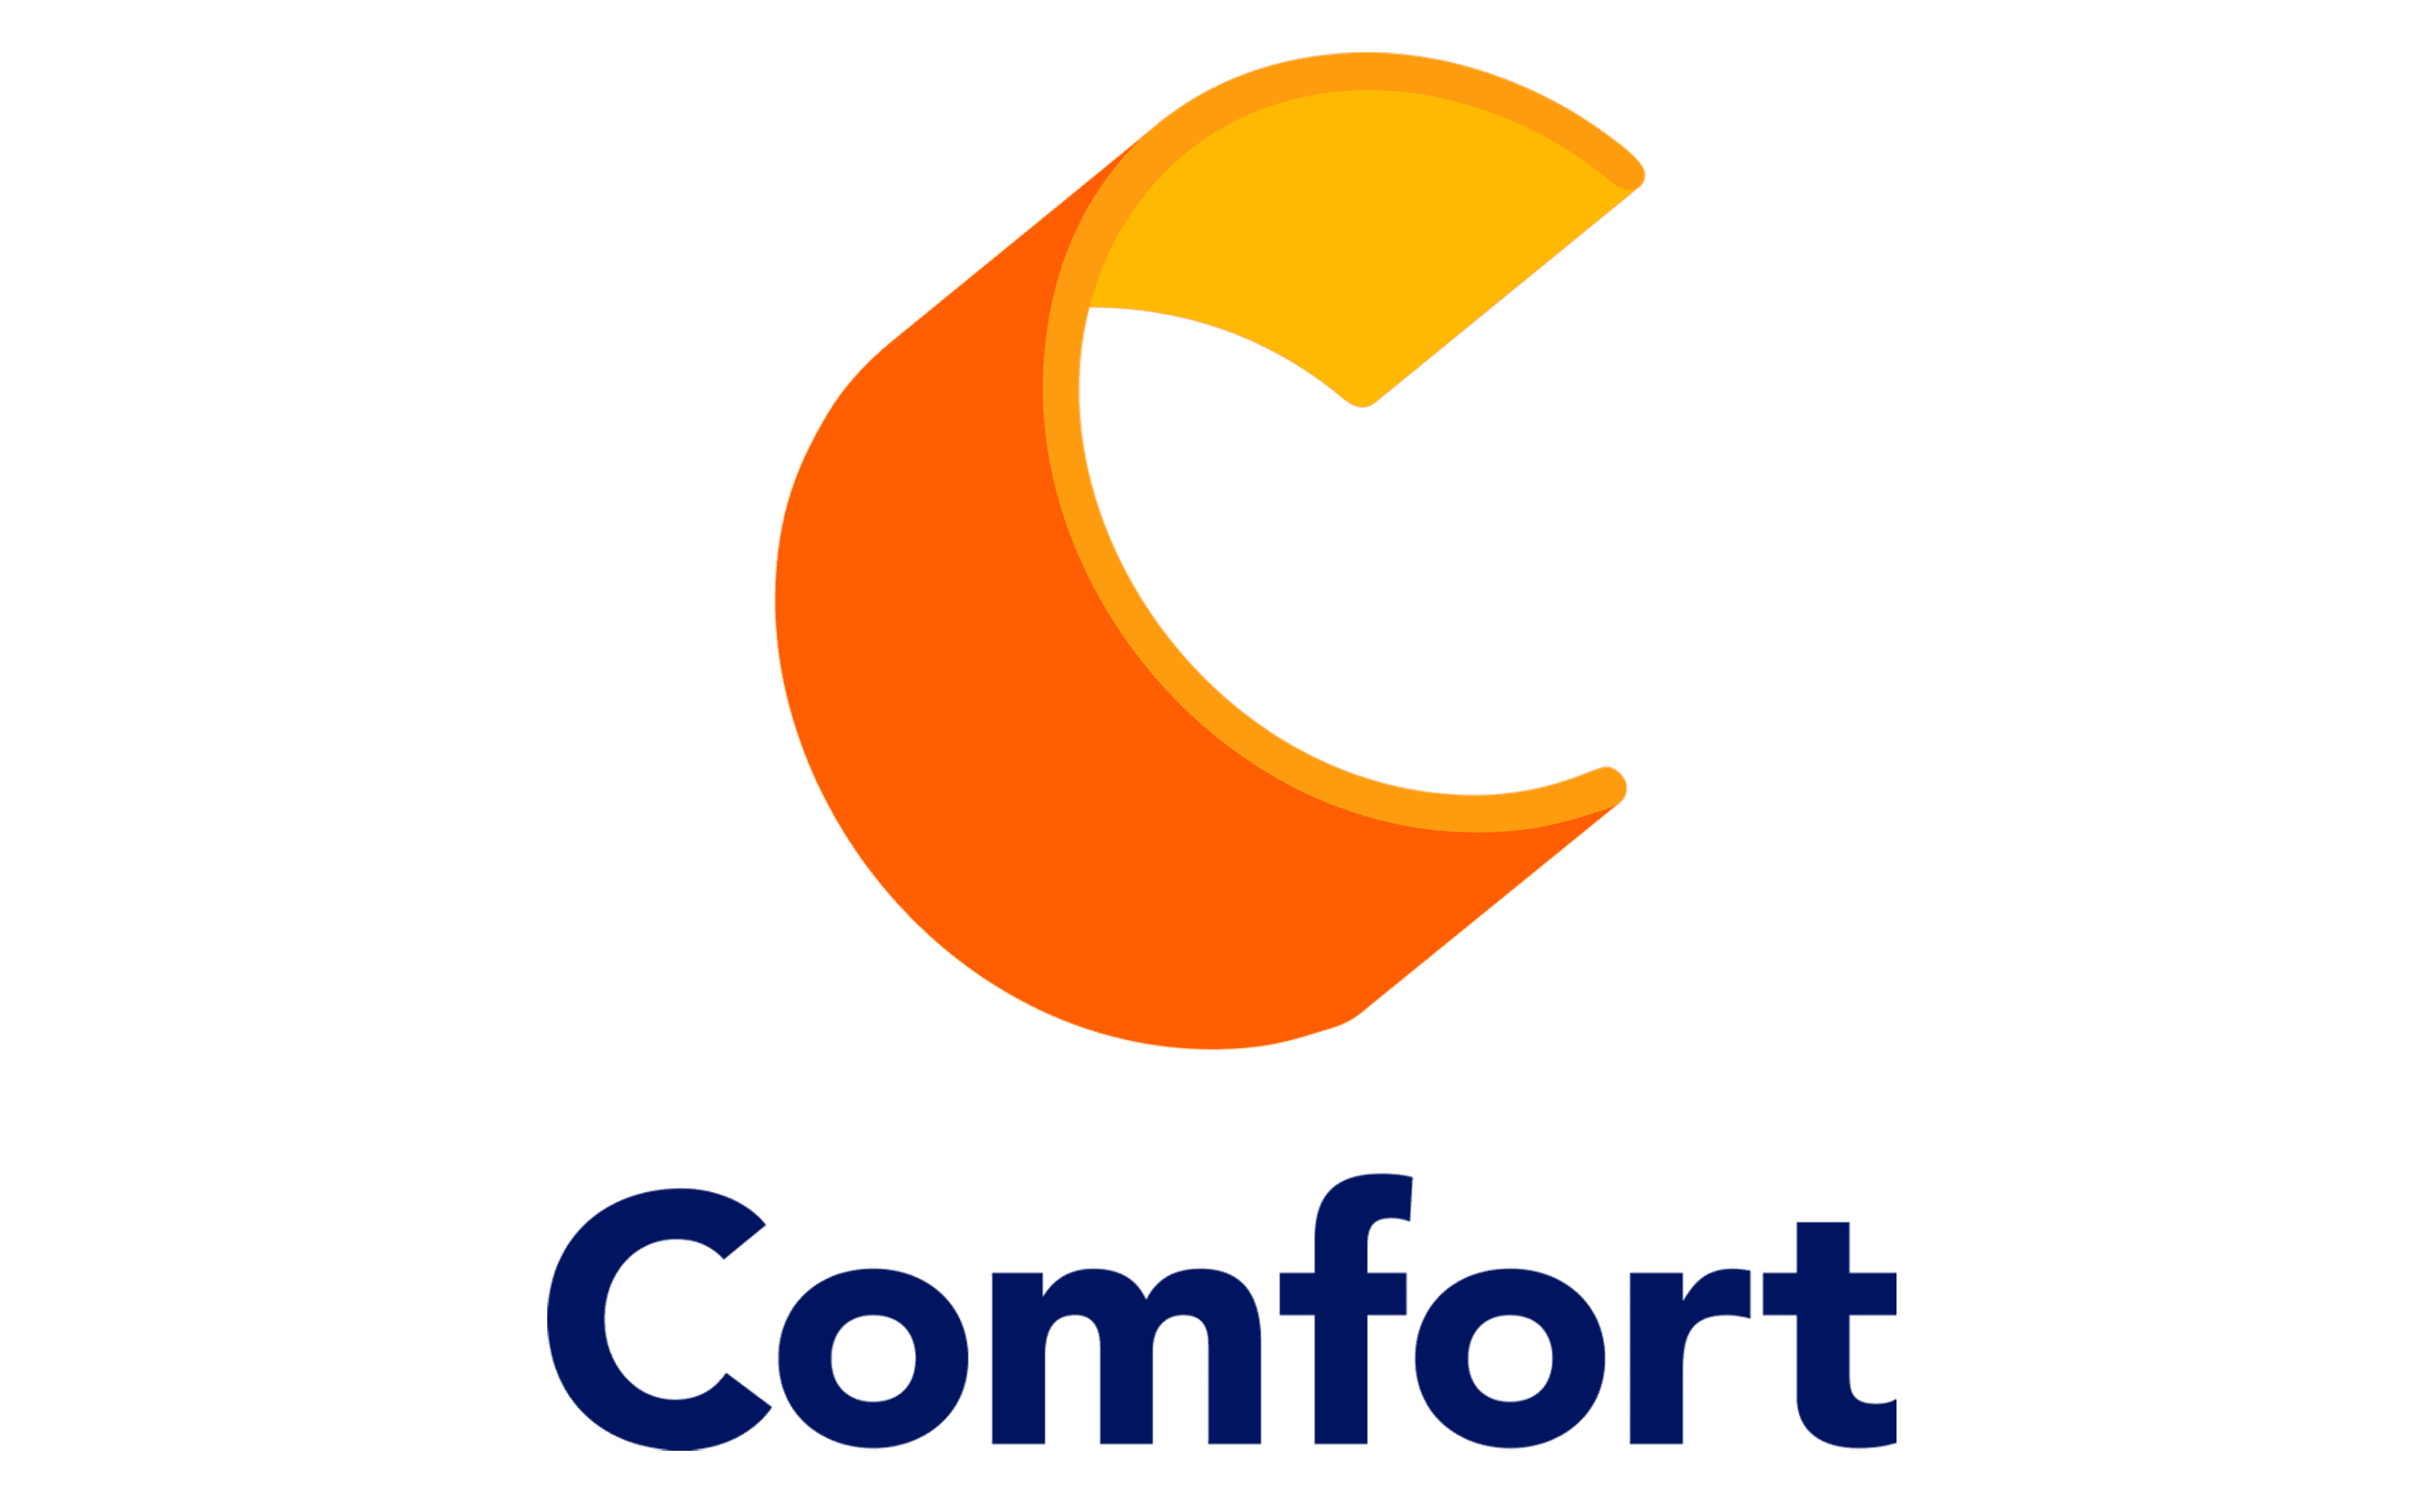 Comfort-Inn-Logo